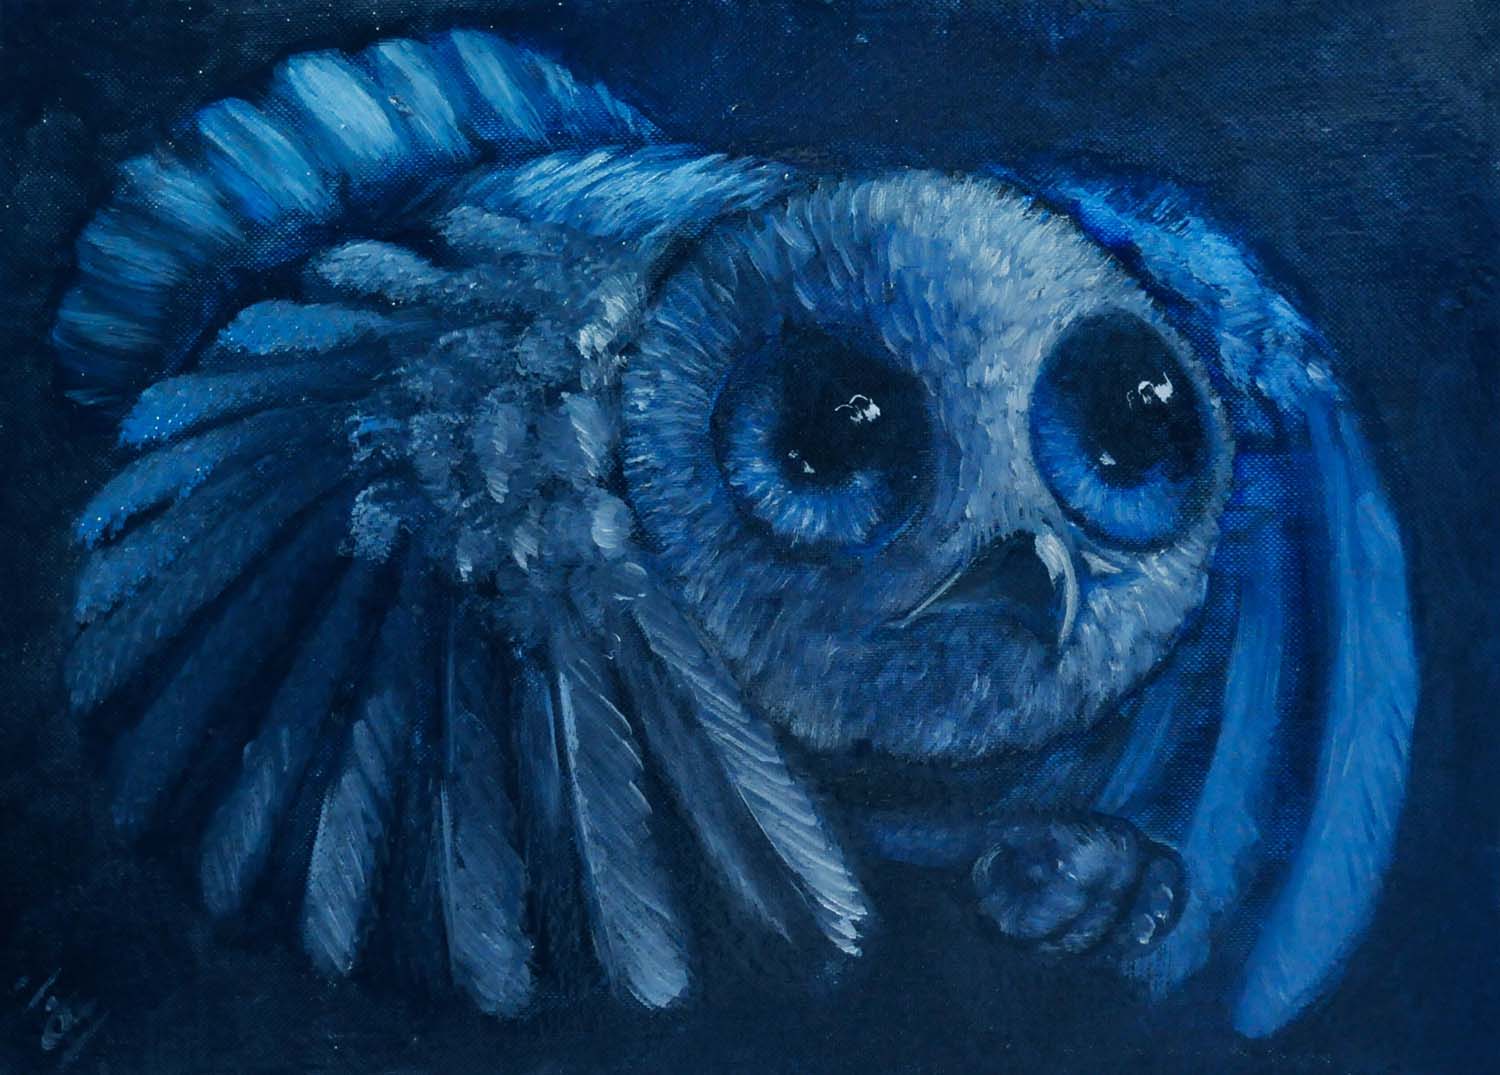 Une chouette bleue, en plein vol. Elle a de petites ailes rondes qui semblent l'envelopper et sa tête, circulaire est envahie par ses yeux immenses et brillants.